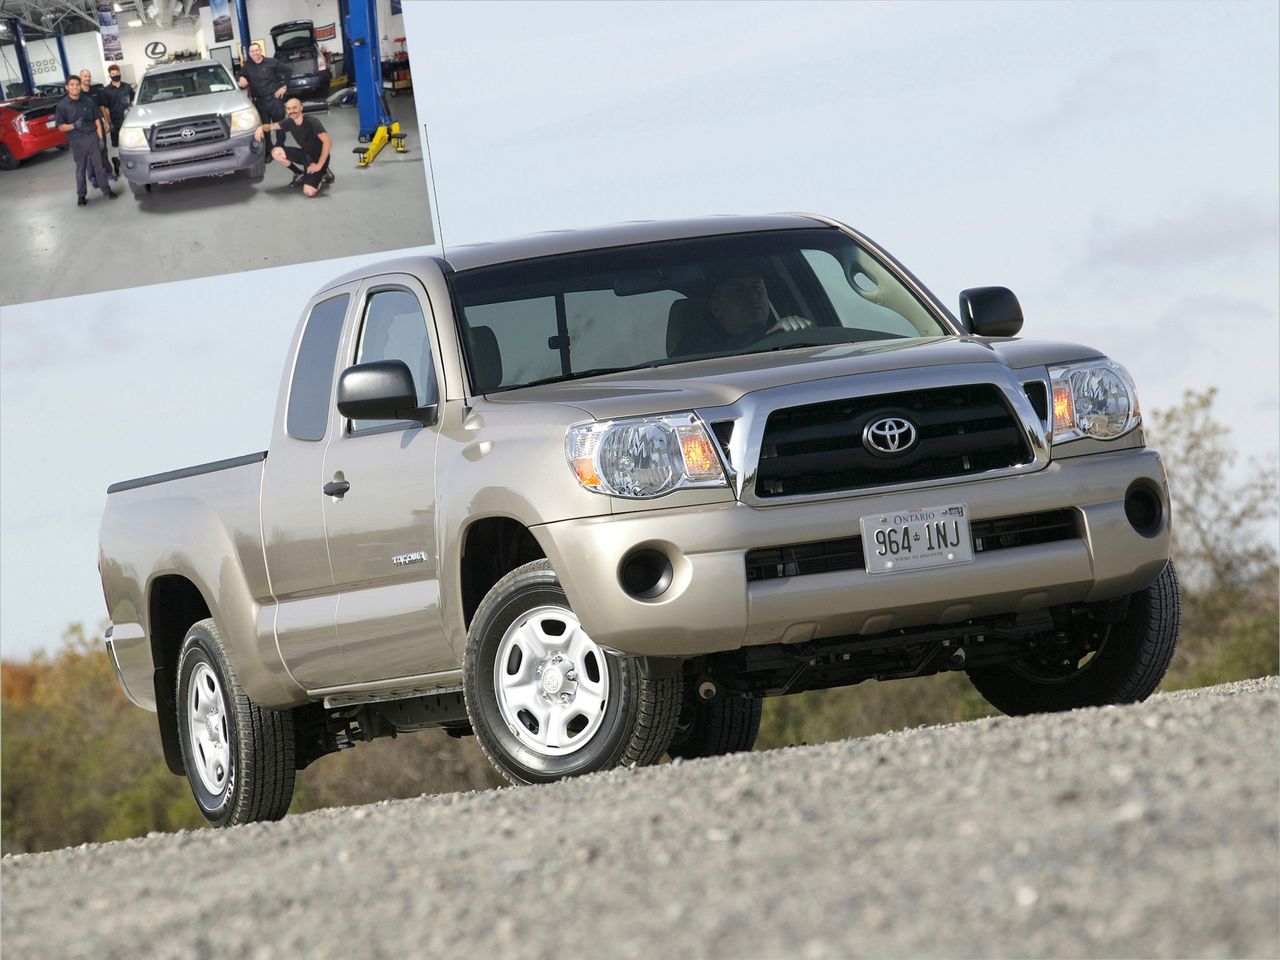 Toyota tacoma przejechała 1,76 mln km i nadal ma się świetnie